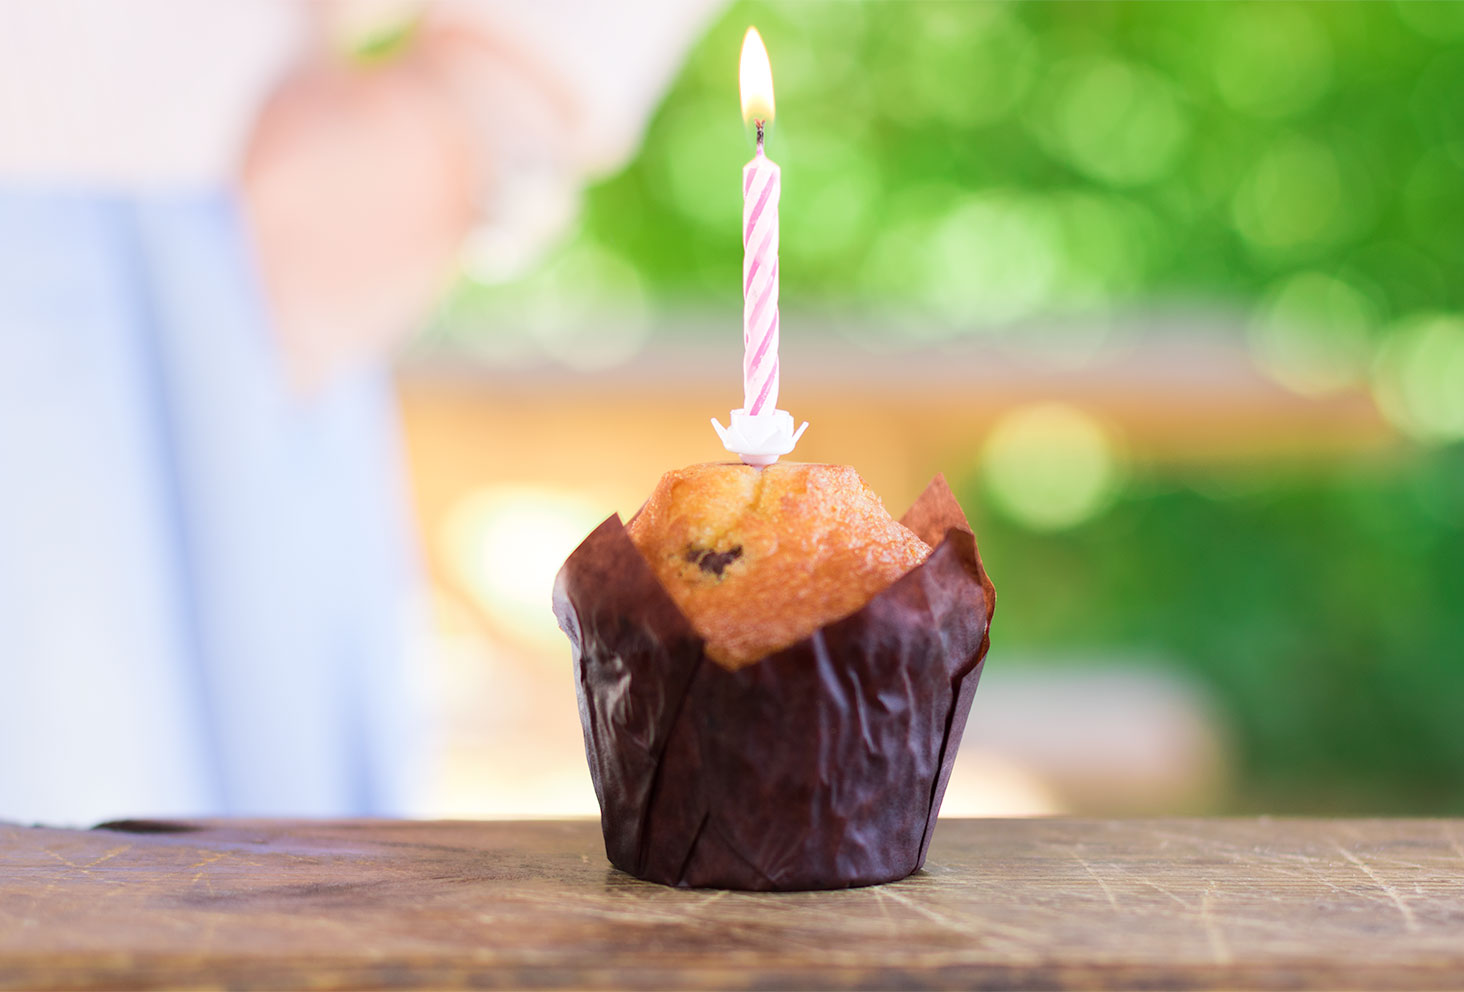 Bougie rose d'anniversaire sur muffin chocolat/noisettes pour les 26 ans